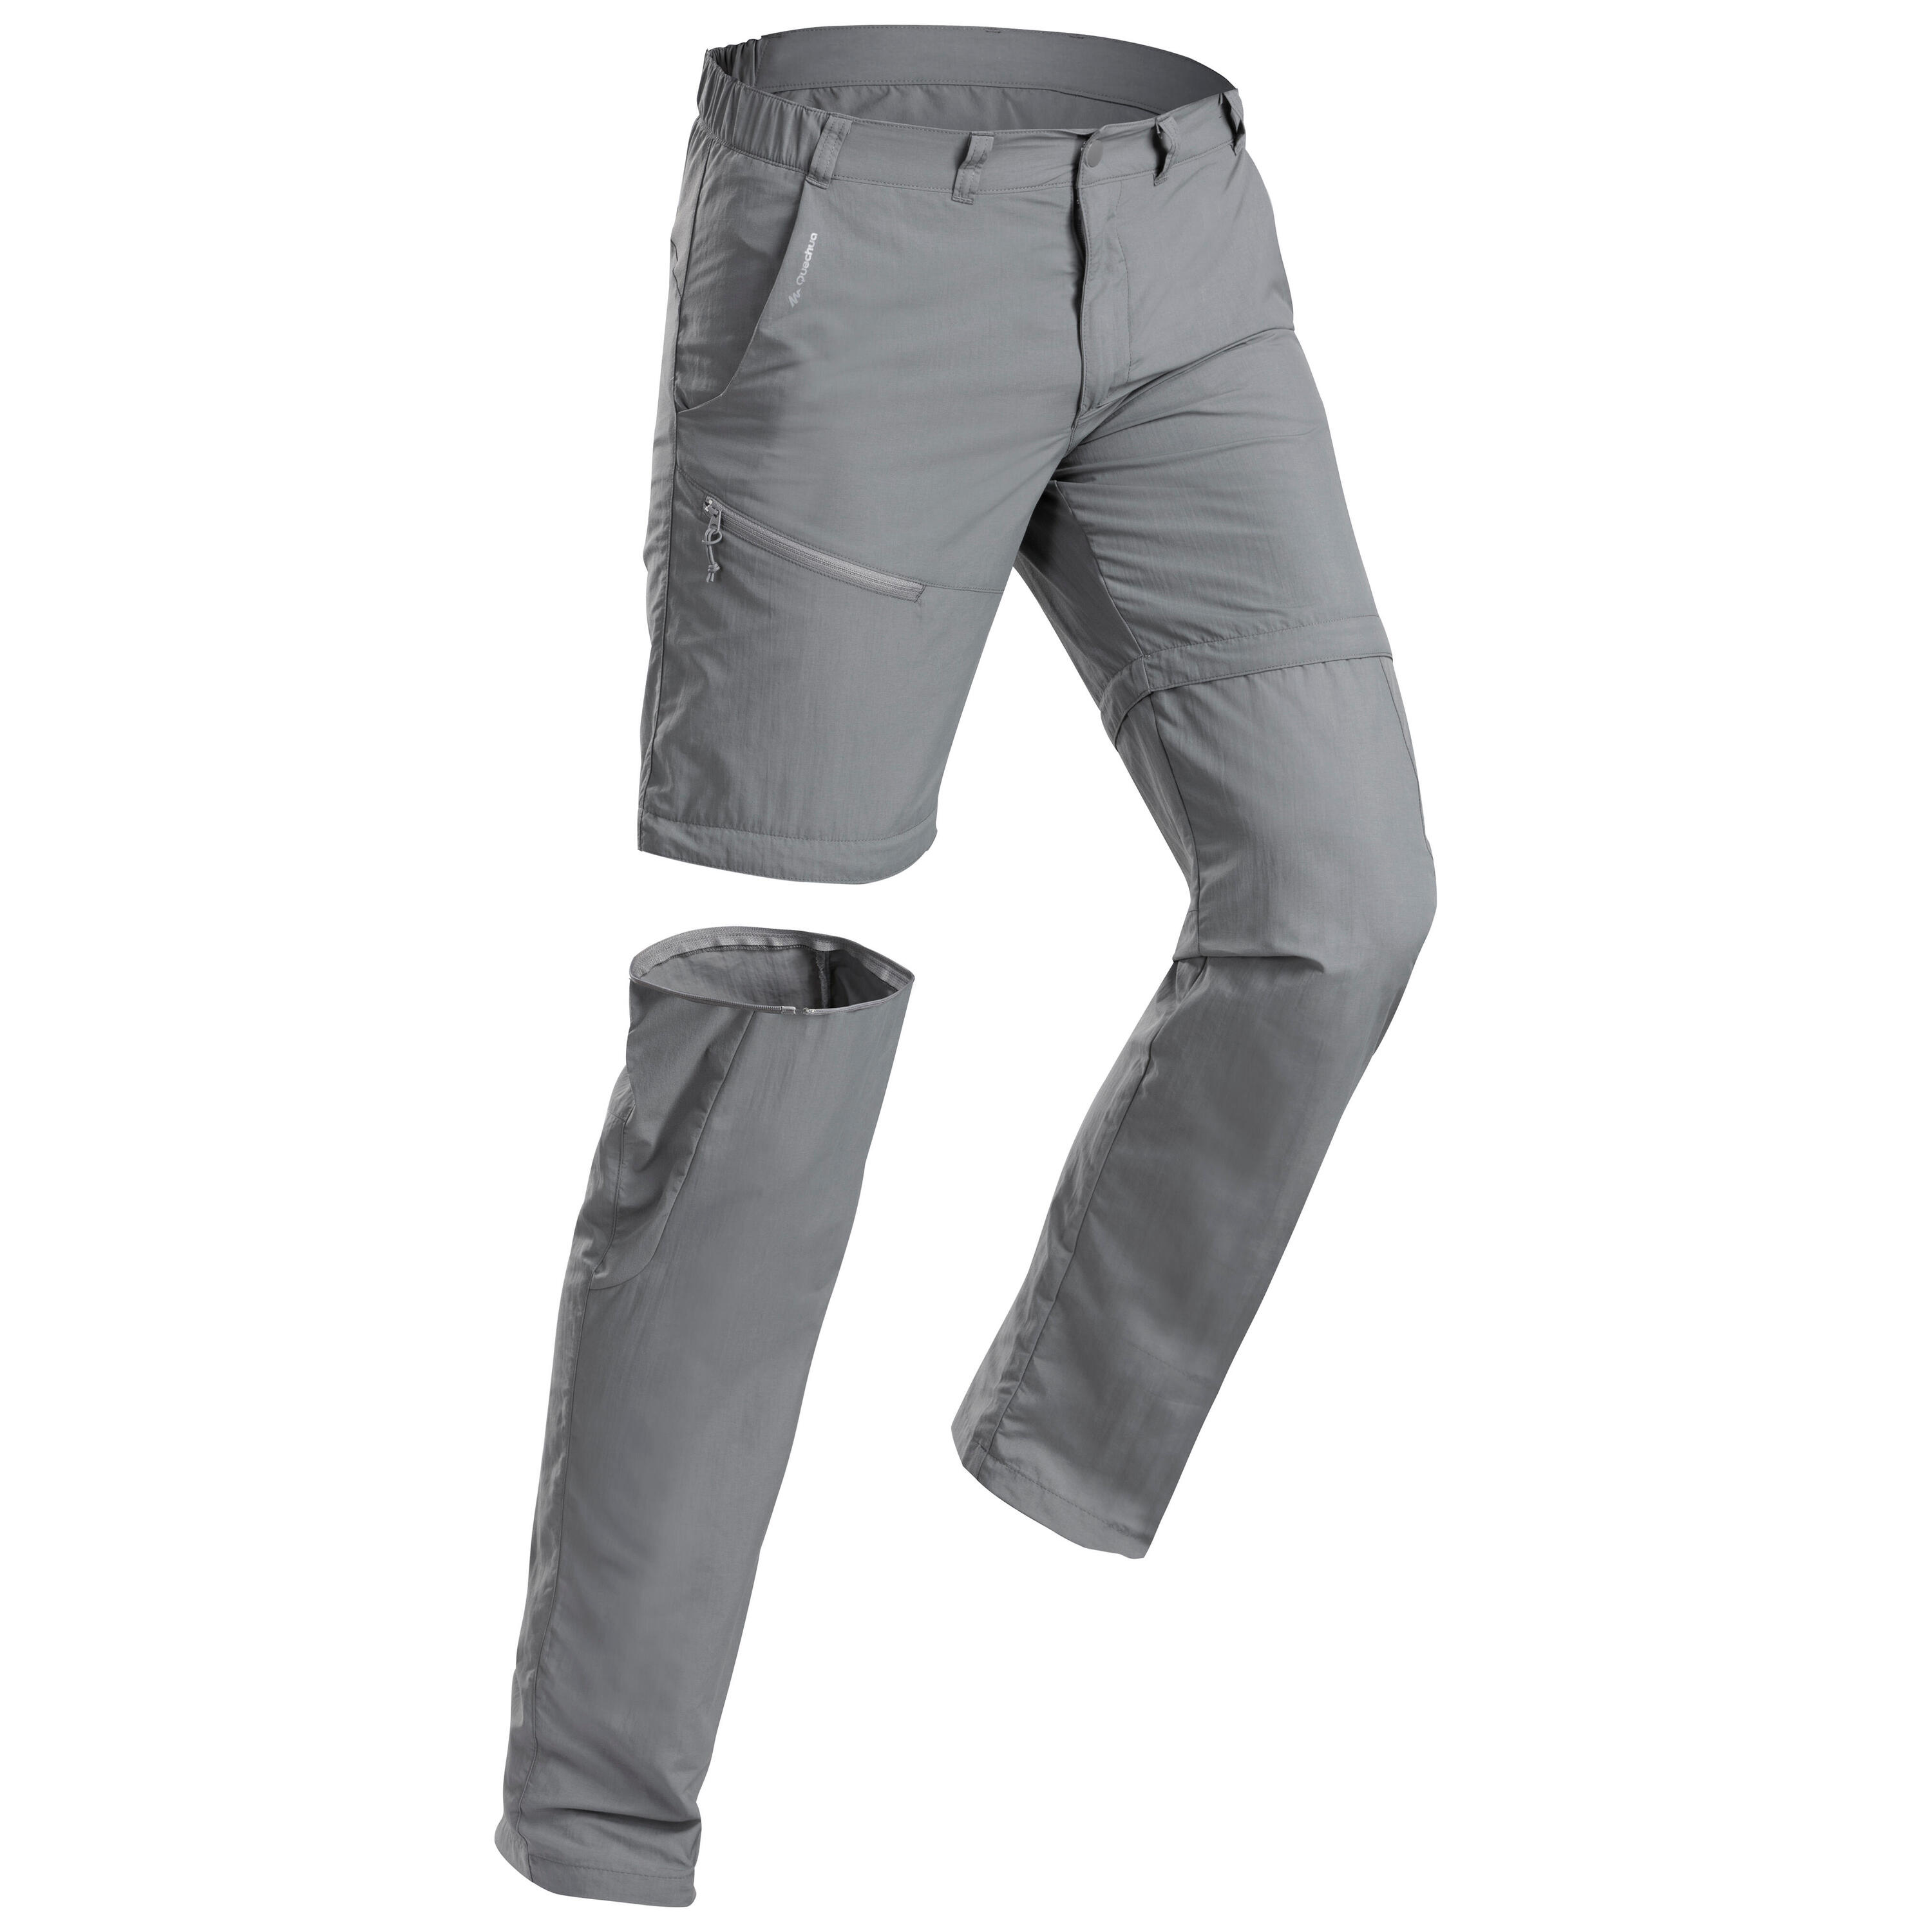 QUECHUA Men’s Modular Mountain Walking Trousers MH150